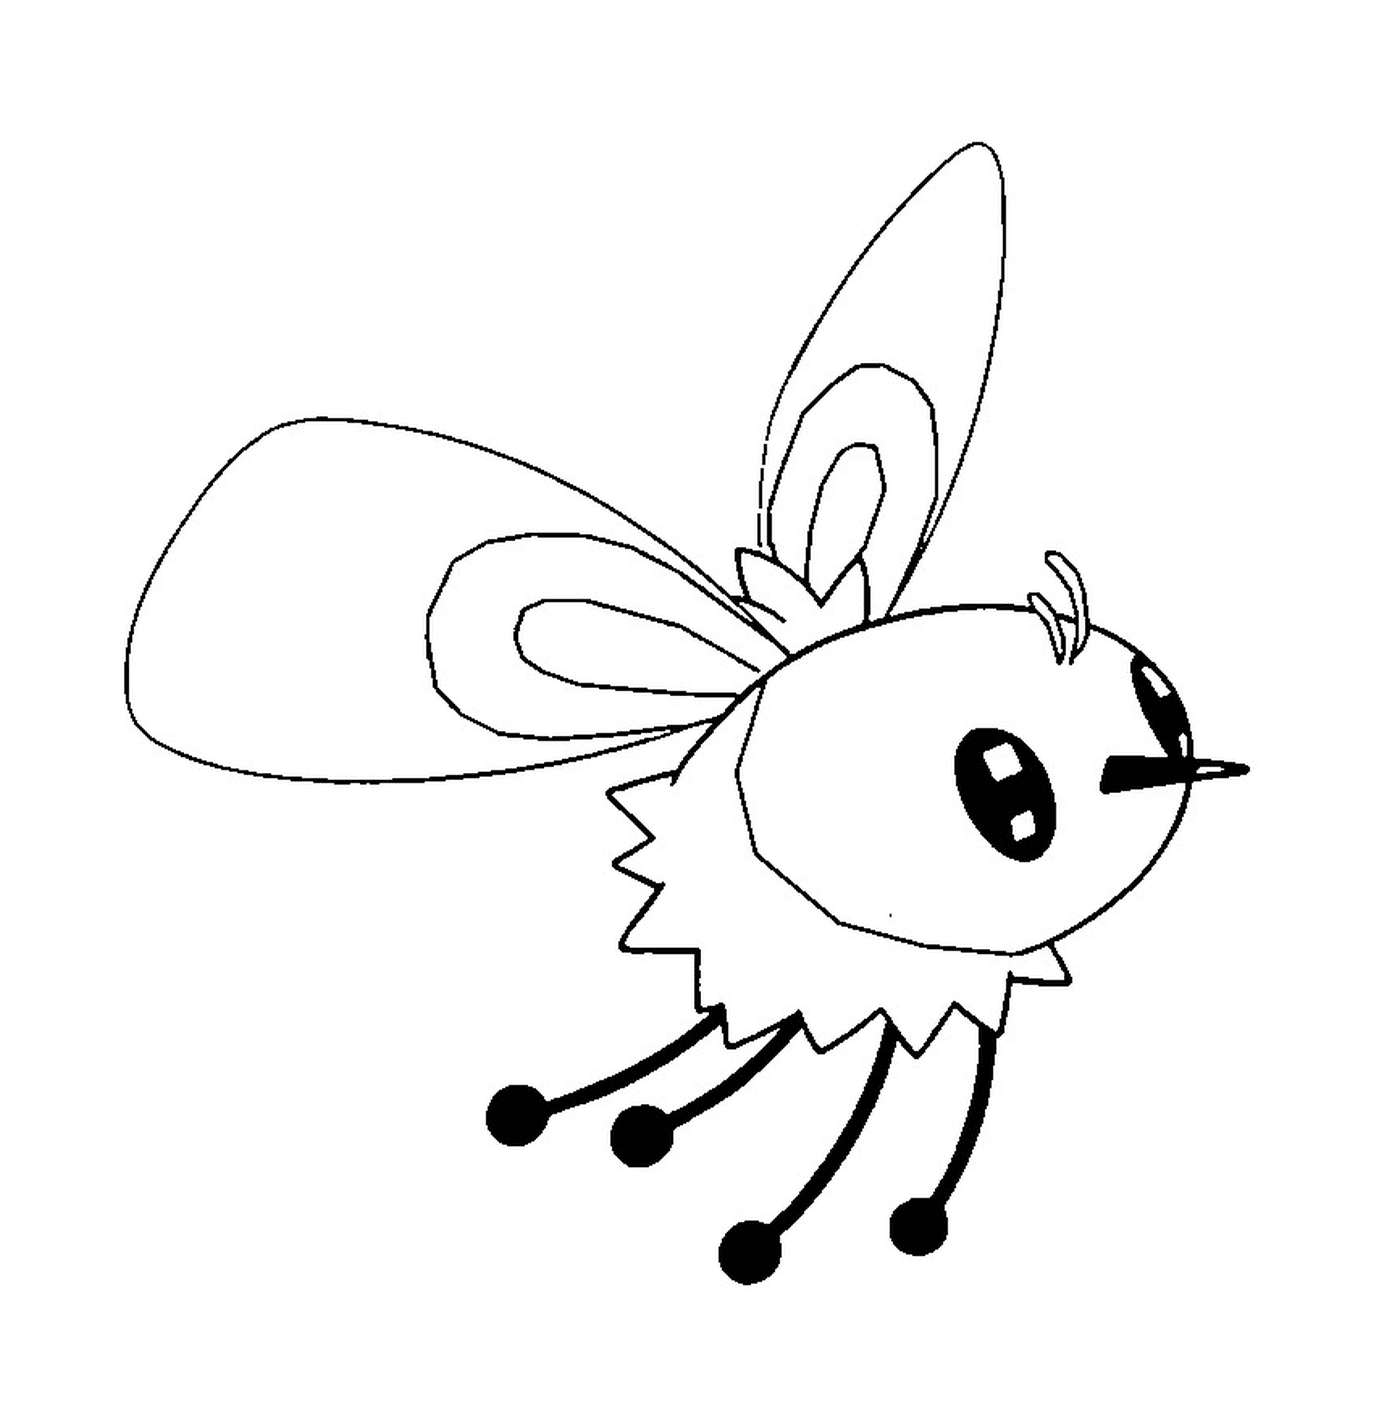  Bombydou,一只昆虫 